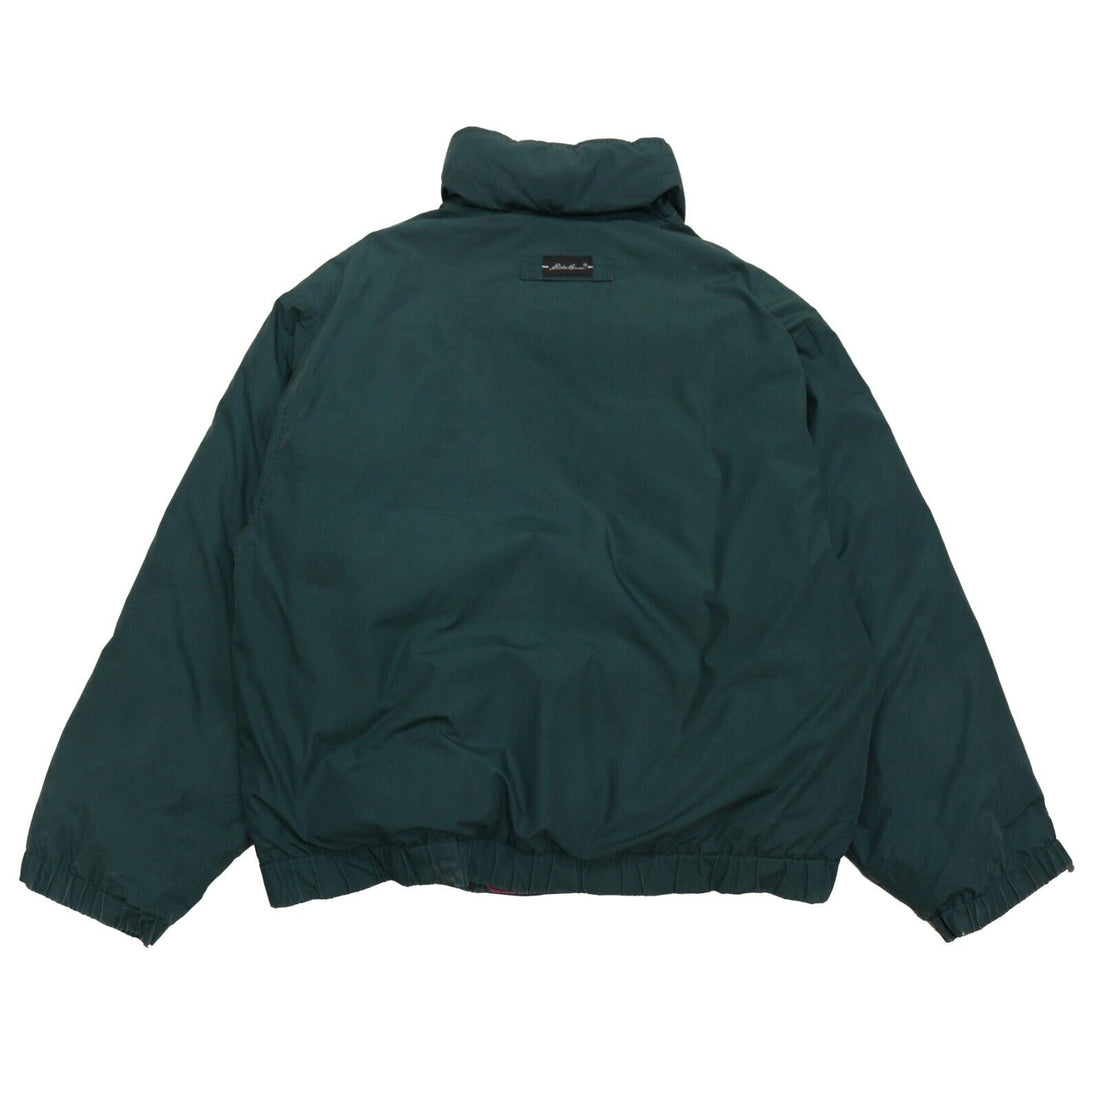 Vintage Eddie Bauer Puffer Jacket Size 2XL Green Down Insulated 90s